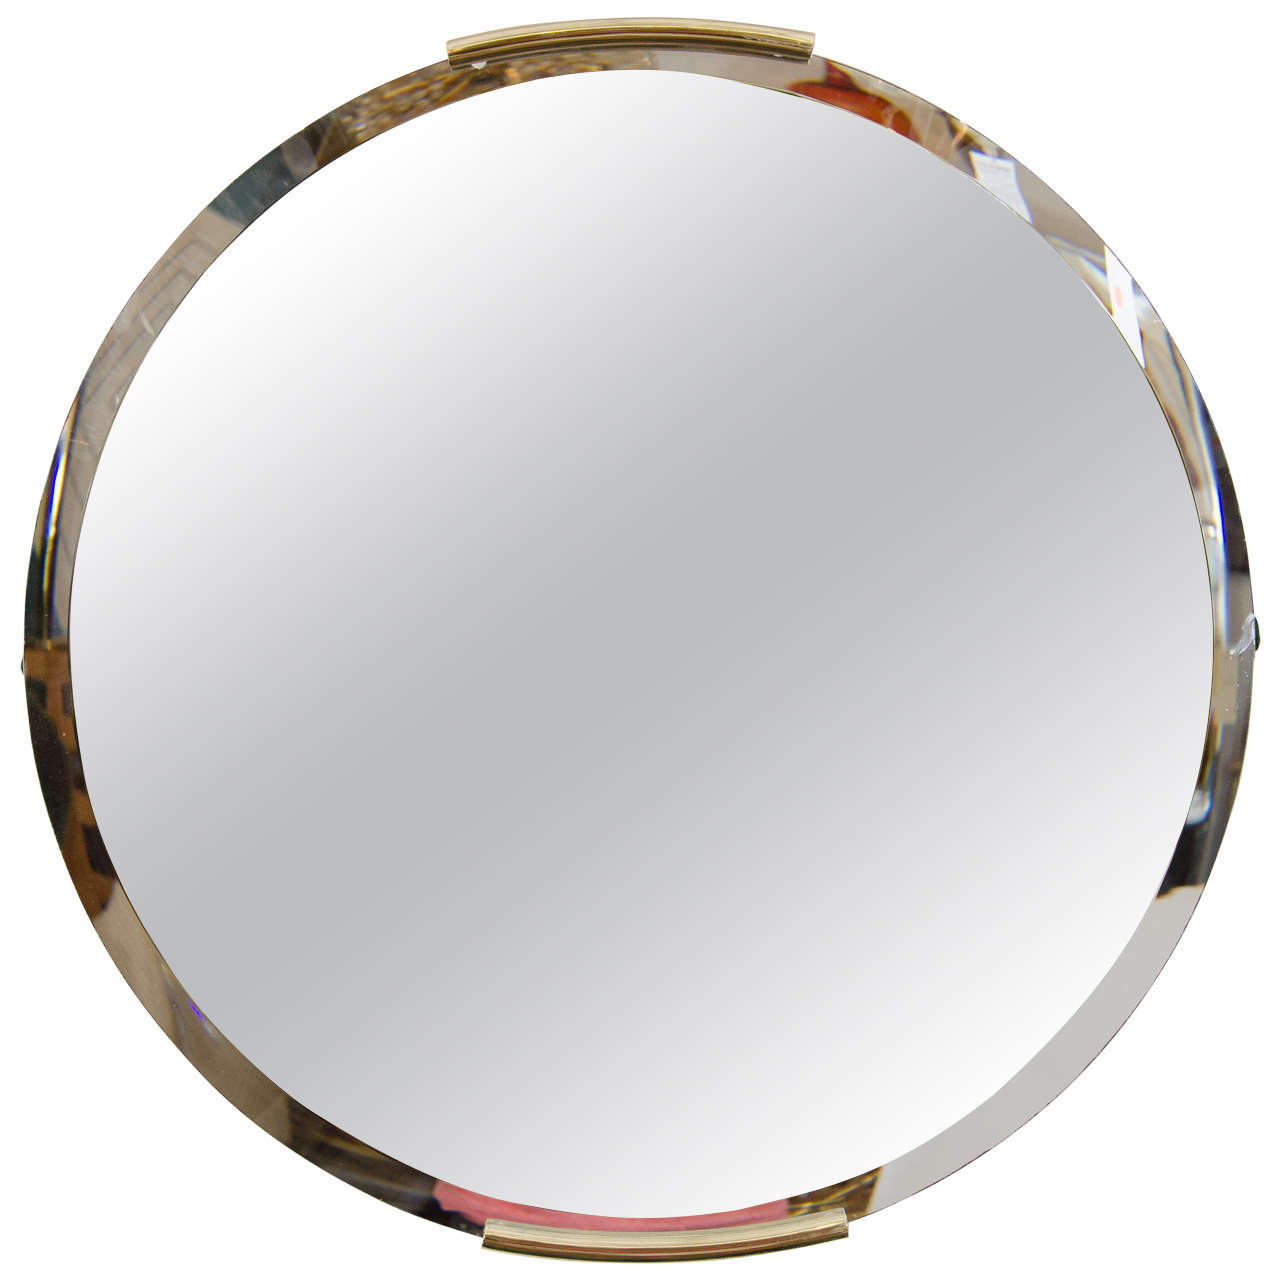 Midcentury Milo Baughman for Thayer Coggin Round Wall Mirror with Brass Trim